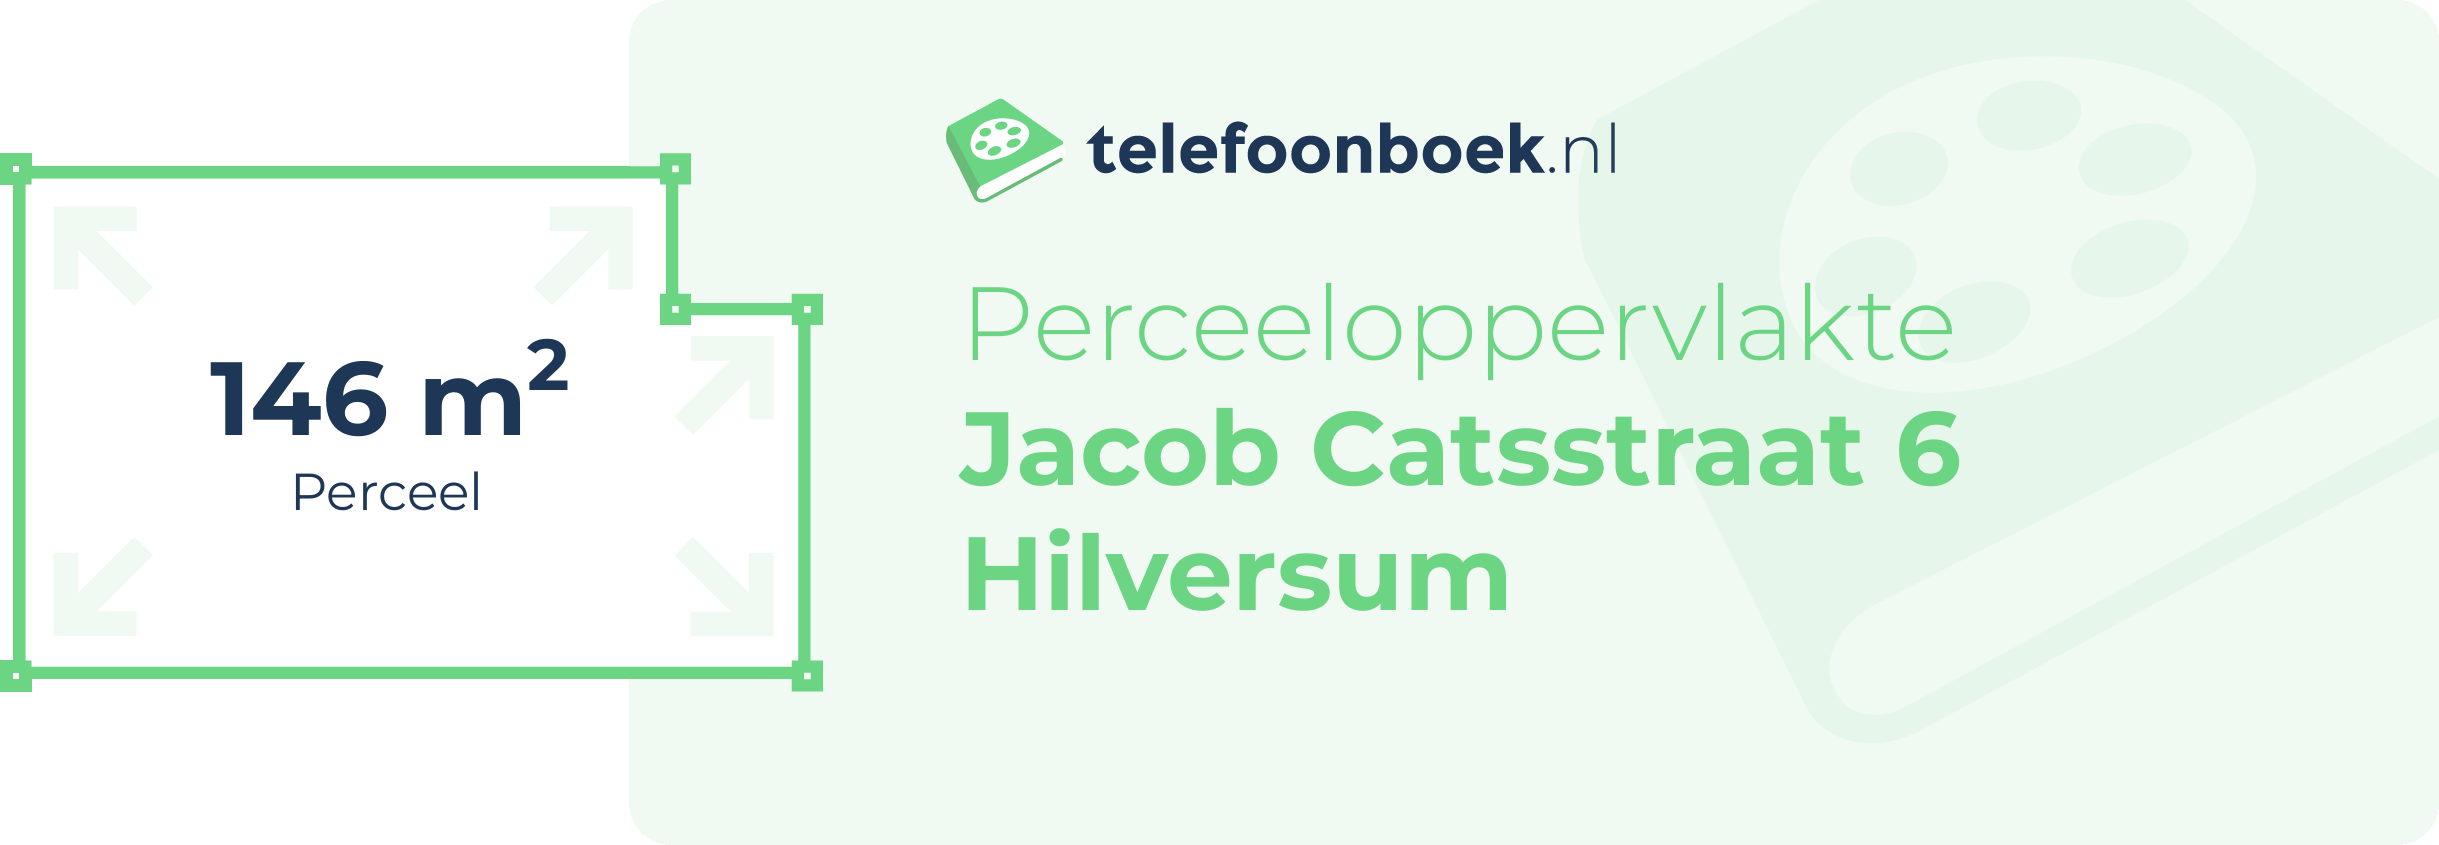 Perceeloppervlakte Jacob Catsstraat 6 Hilversum